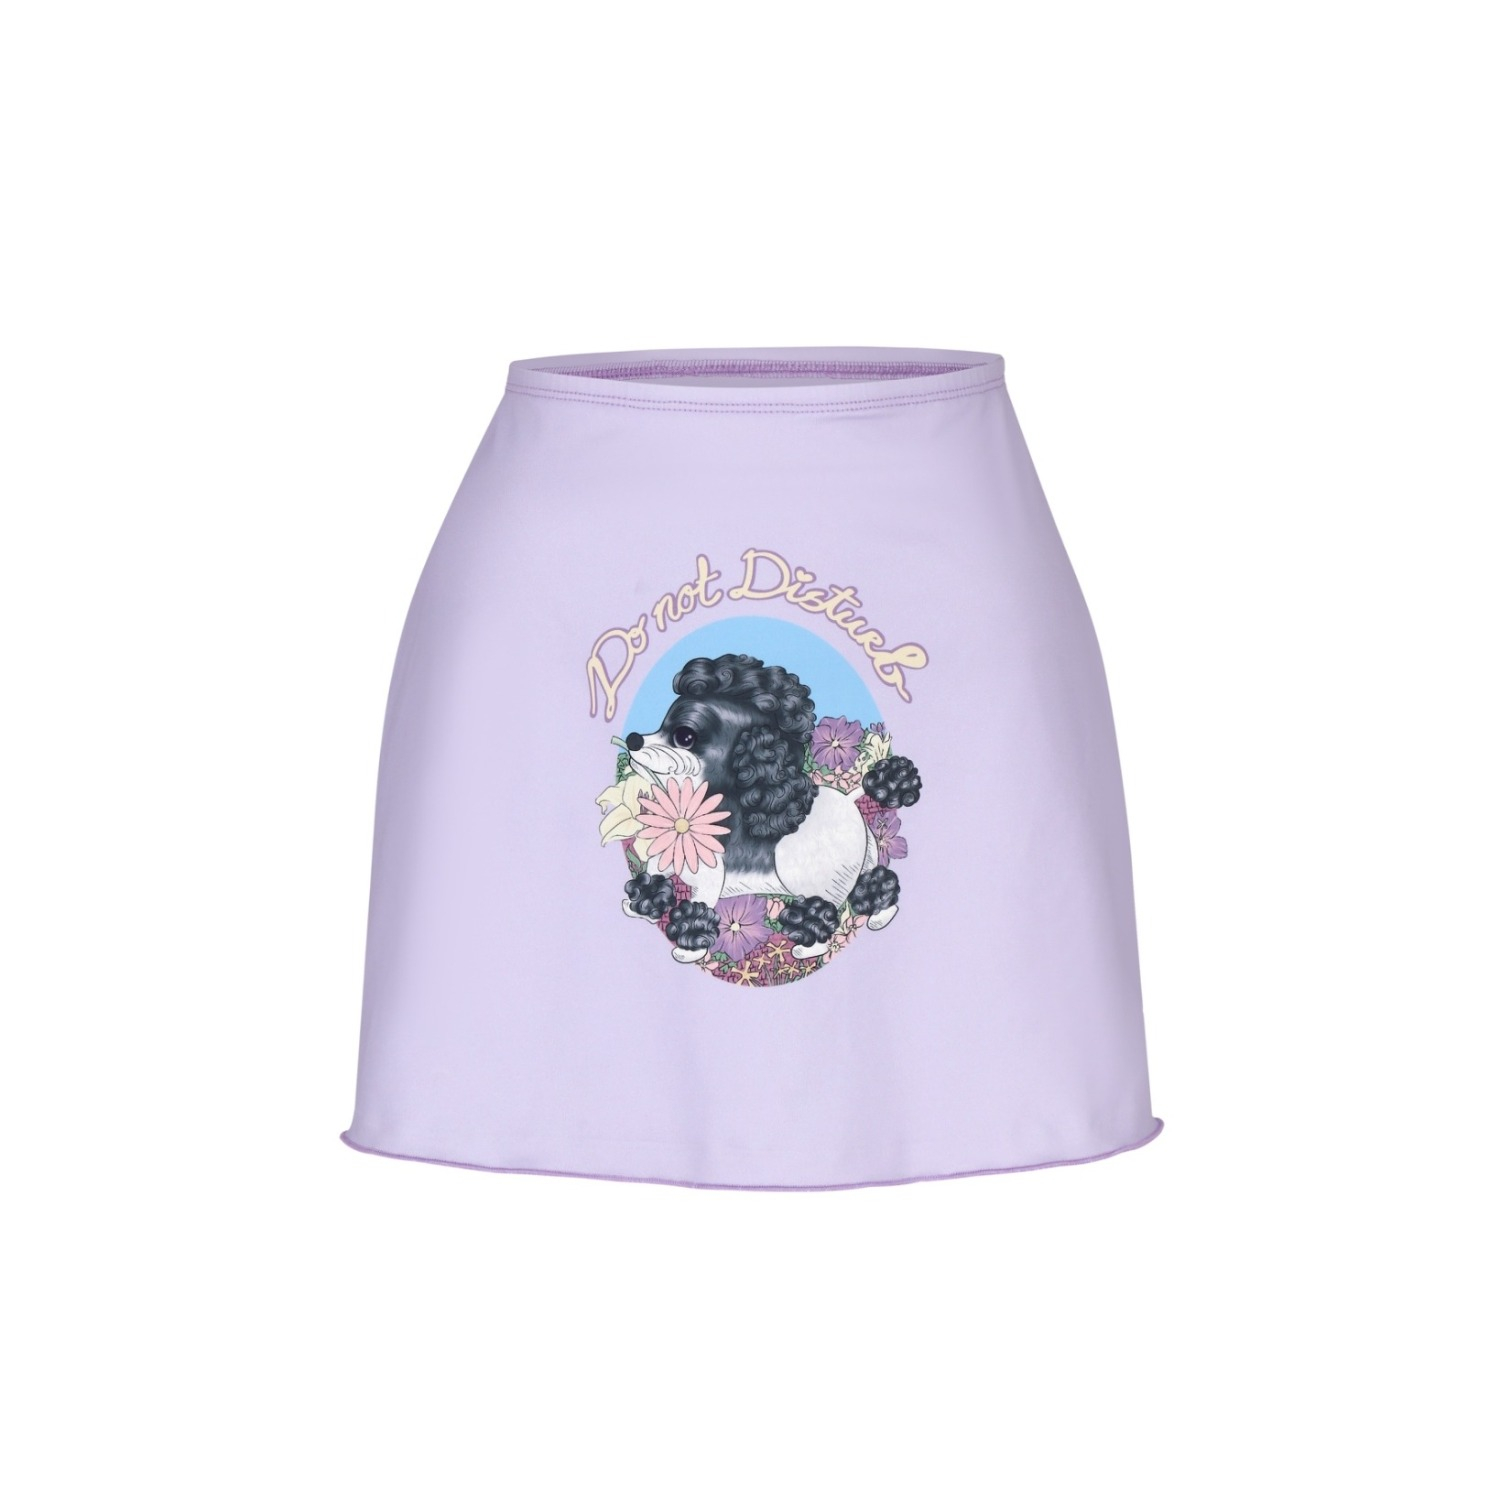 Luna short skirt